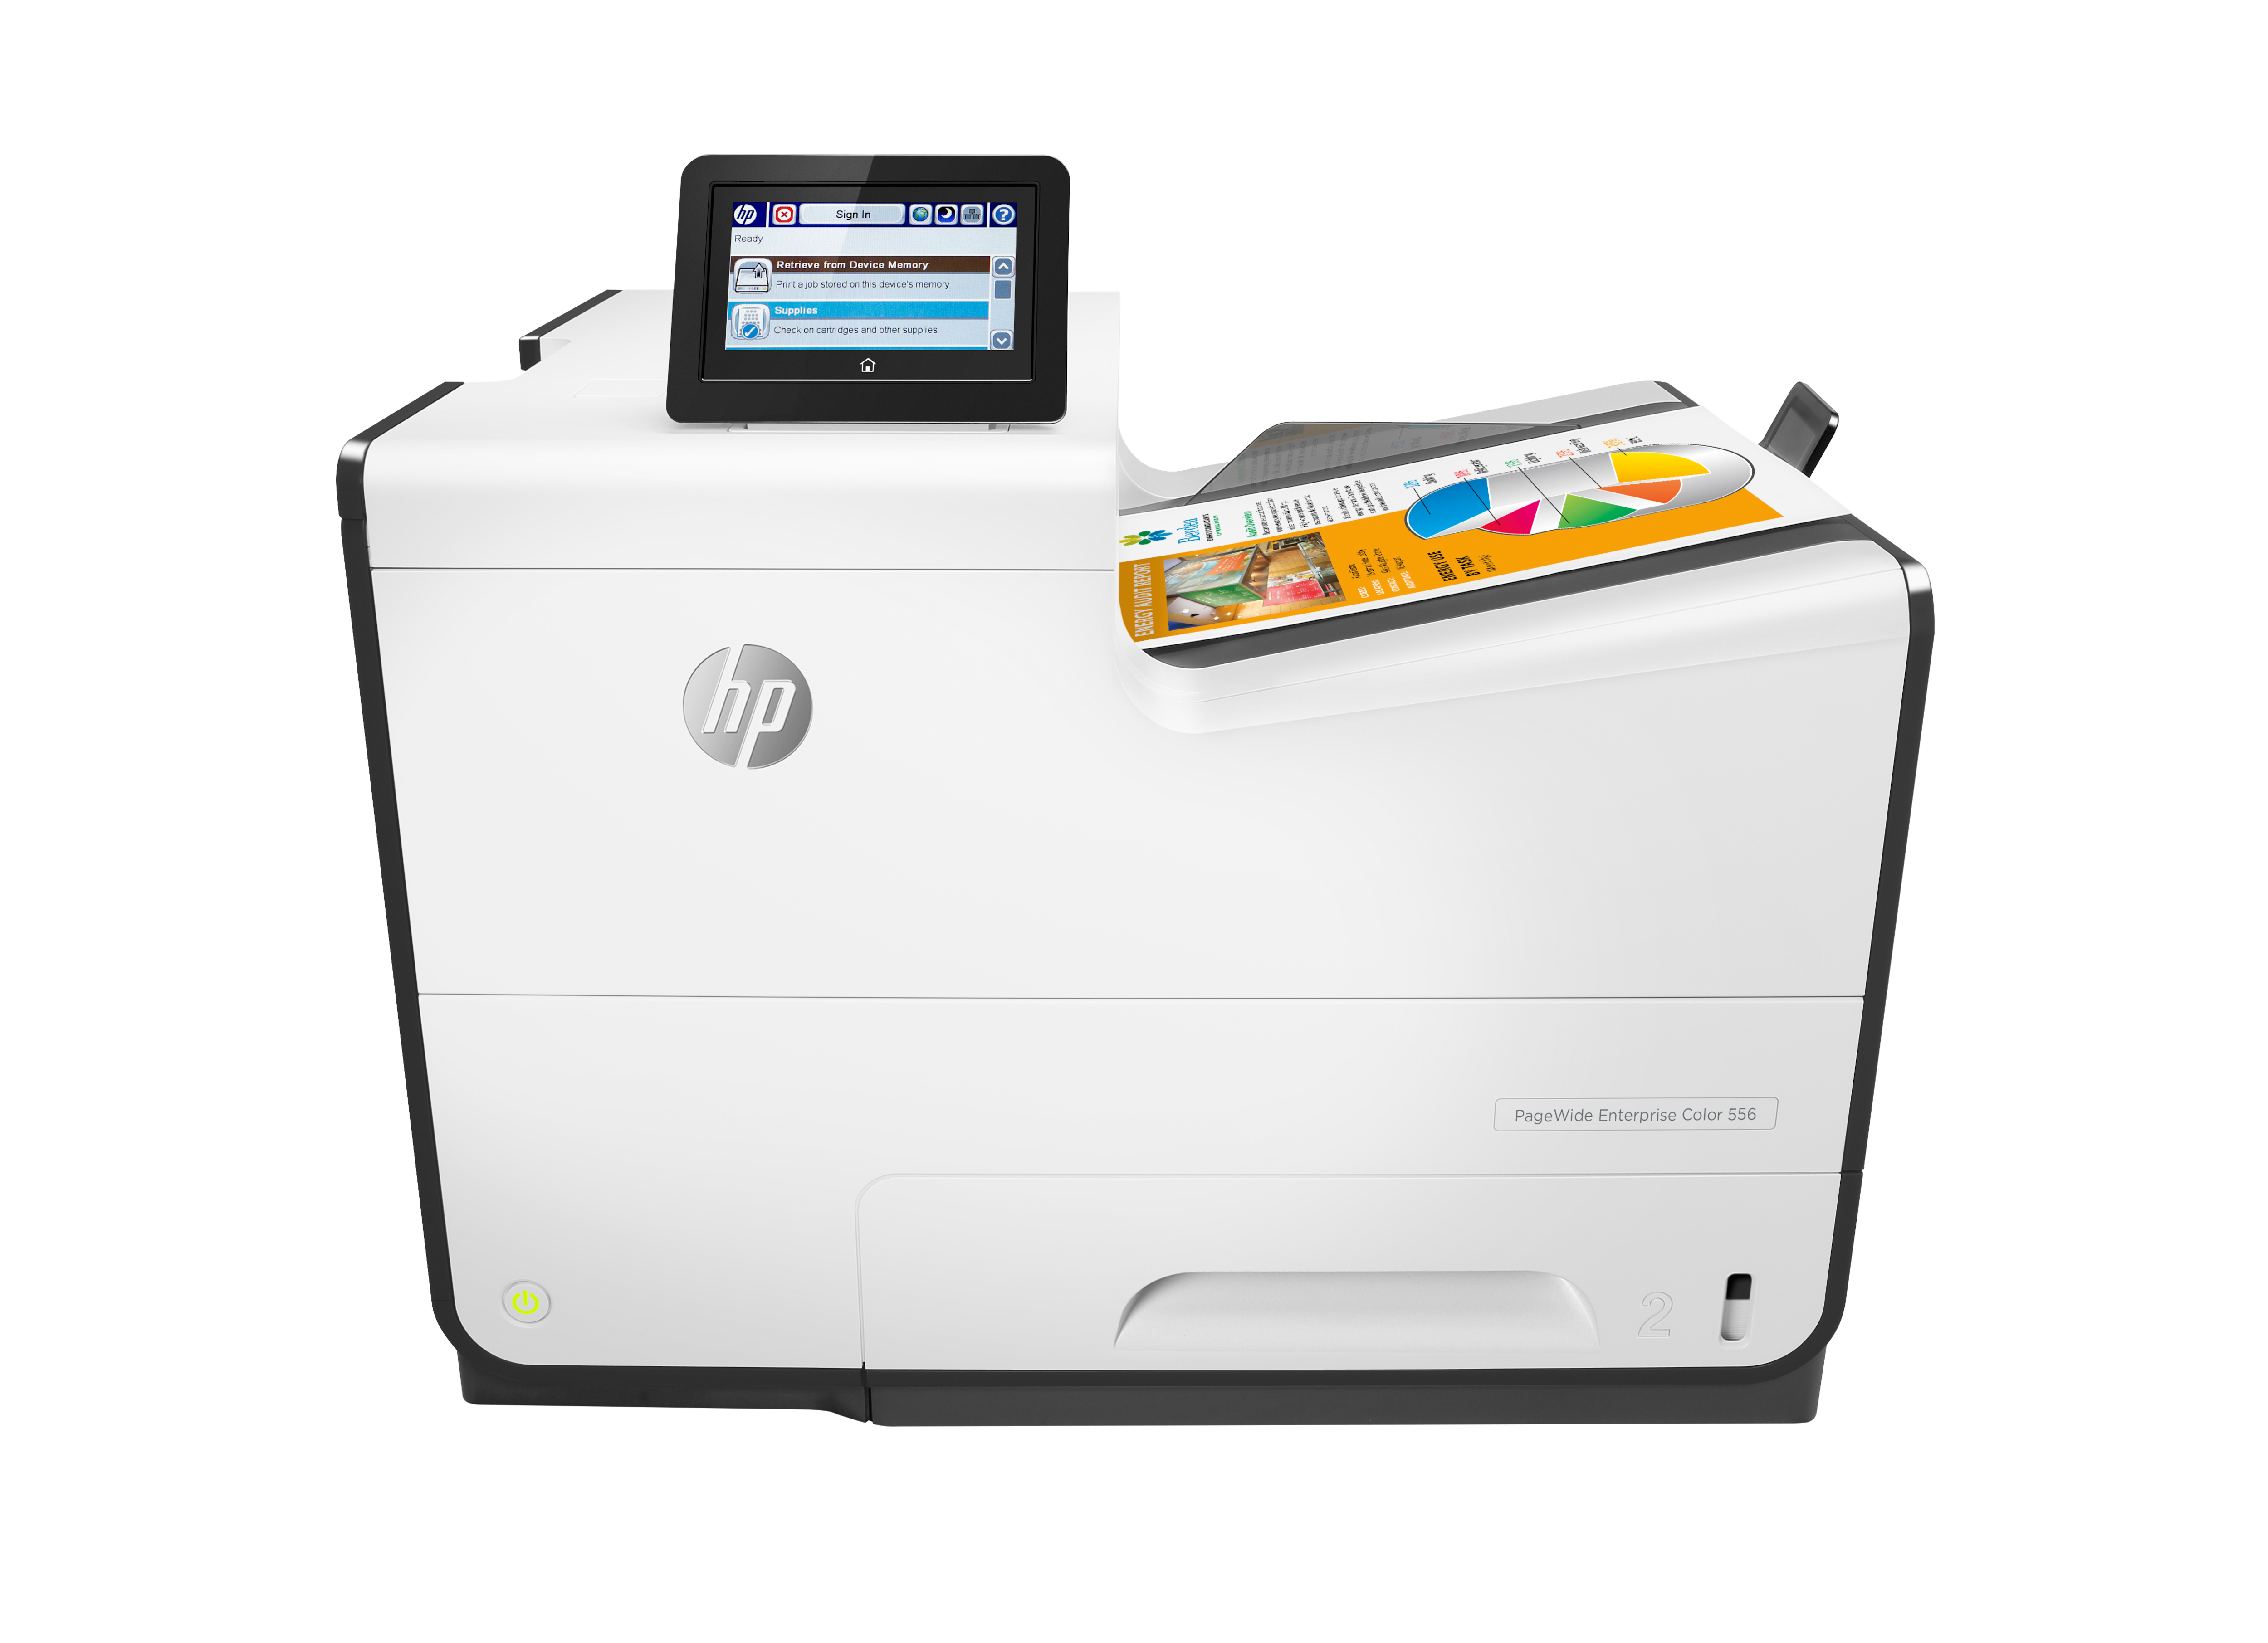 HP PageWide Enterprise Color 556dn inkjet printer